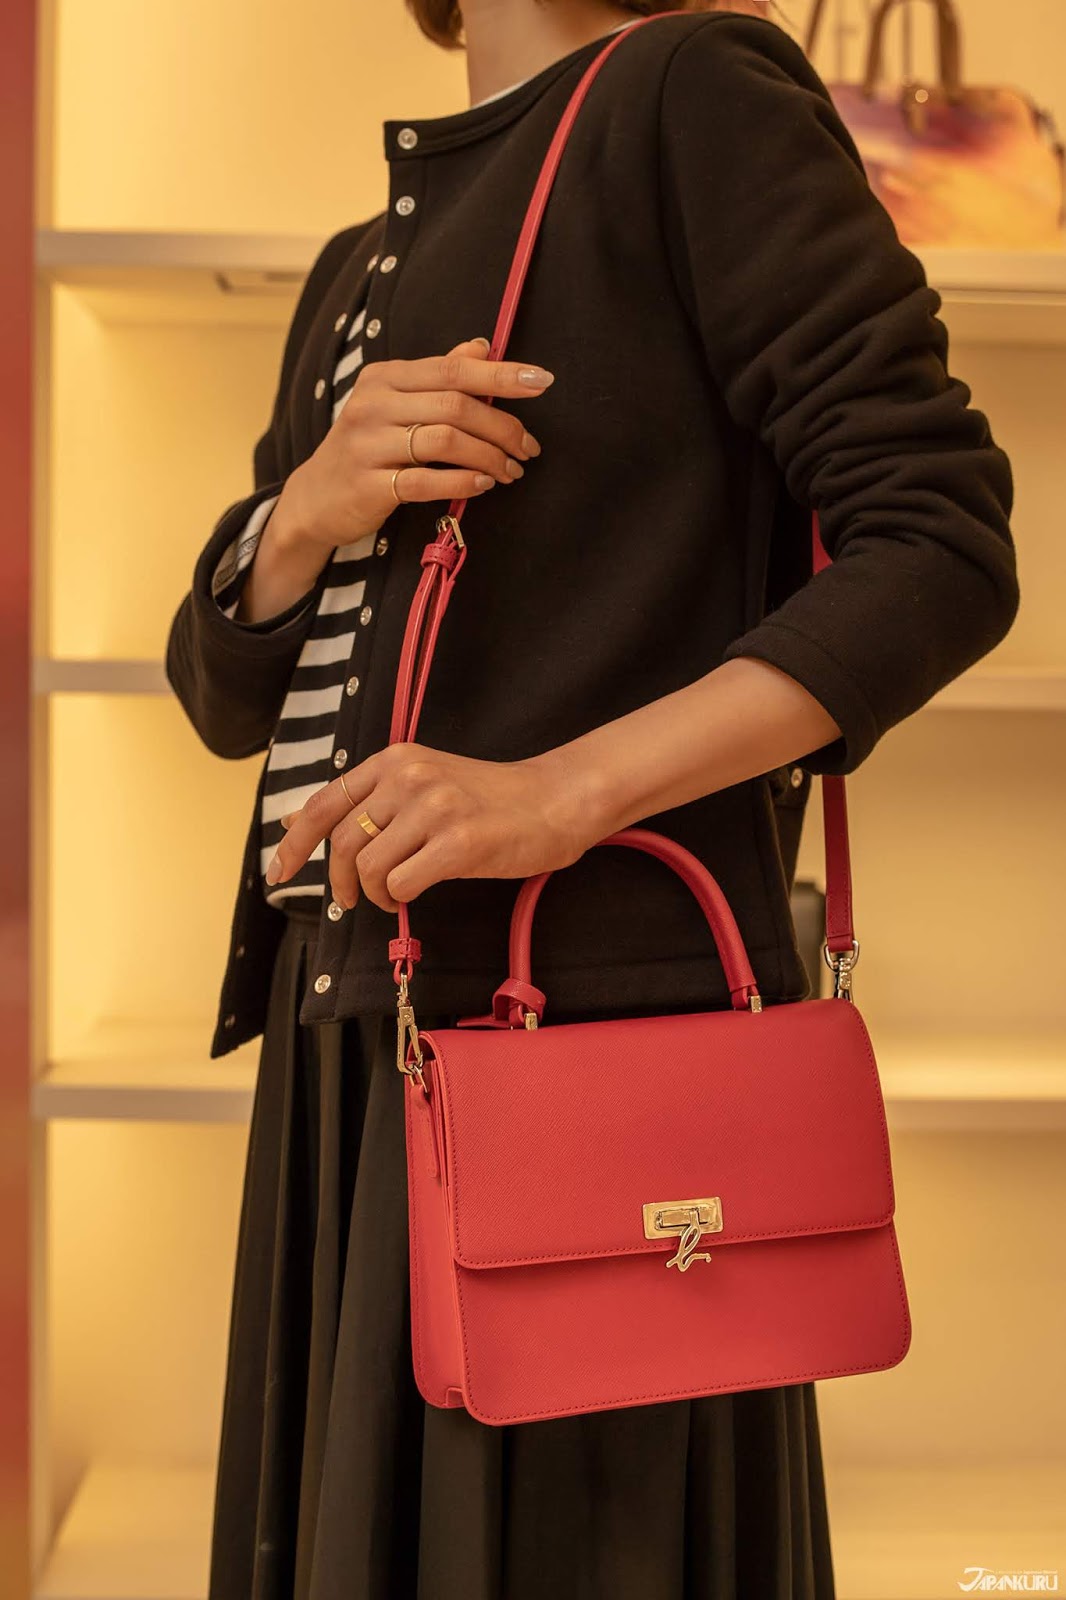 Designer Agnes B Voyage Pink Bag Tote Handbag Purse Satchel